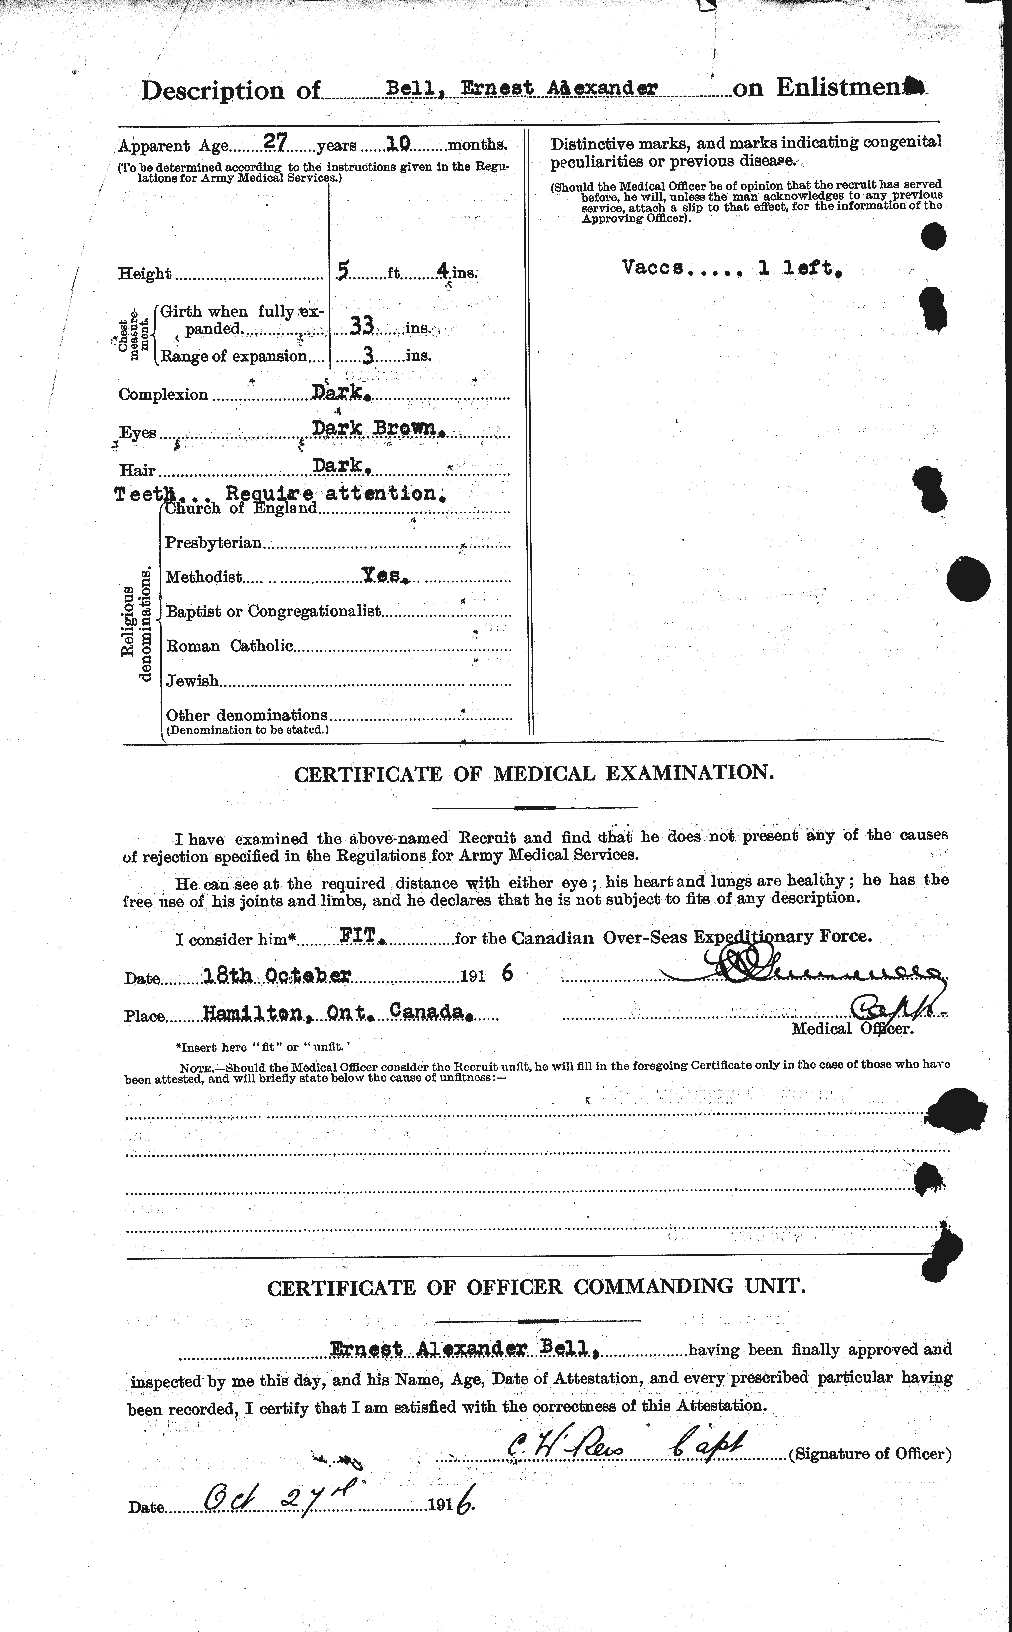 Dossiers du Personnel de la Première Guerre mondiale - CEC 234069b